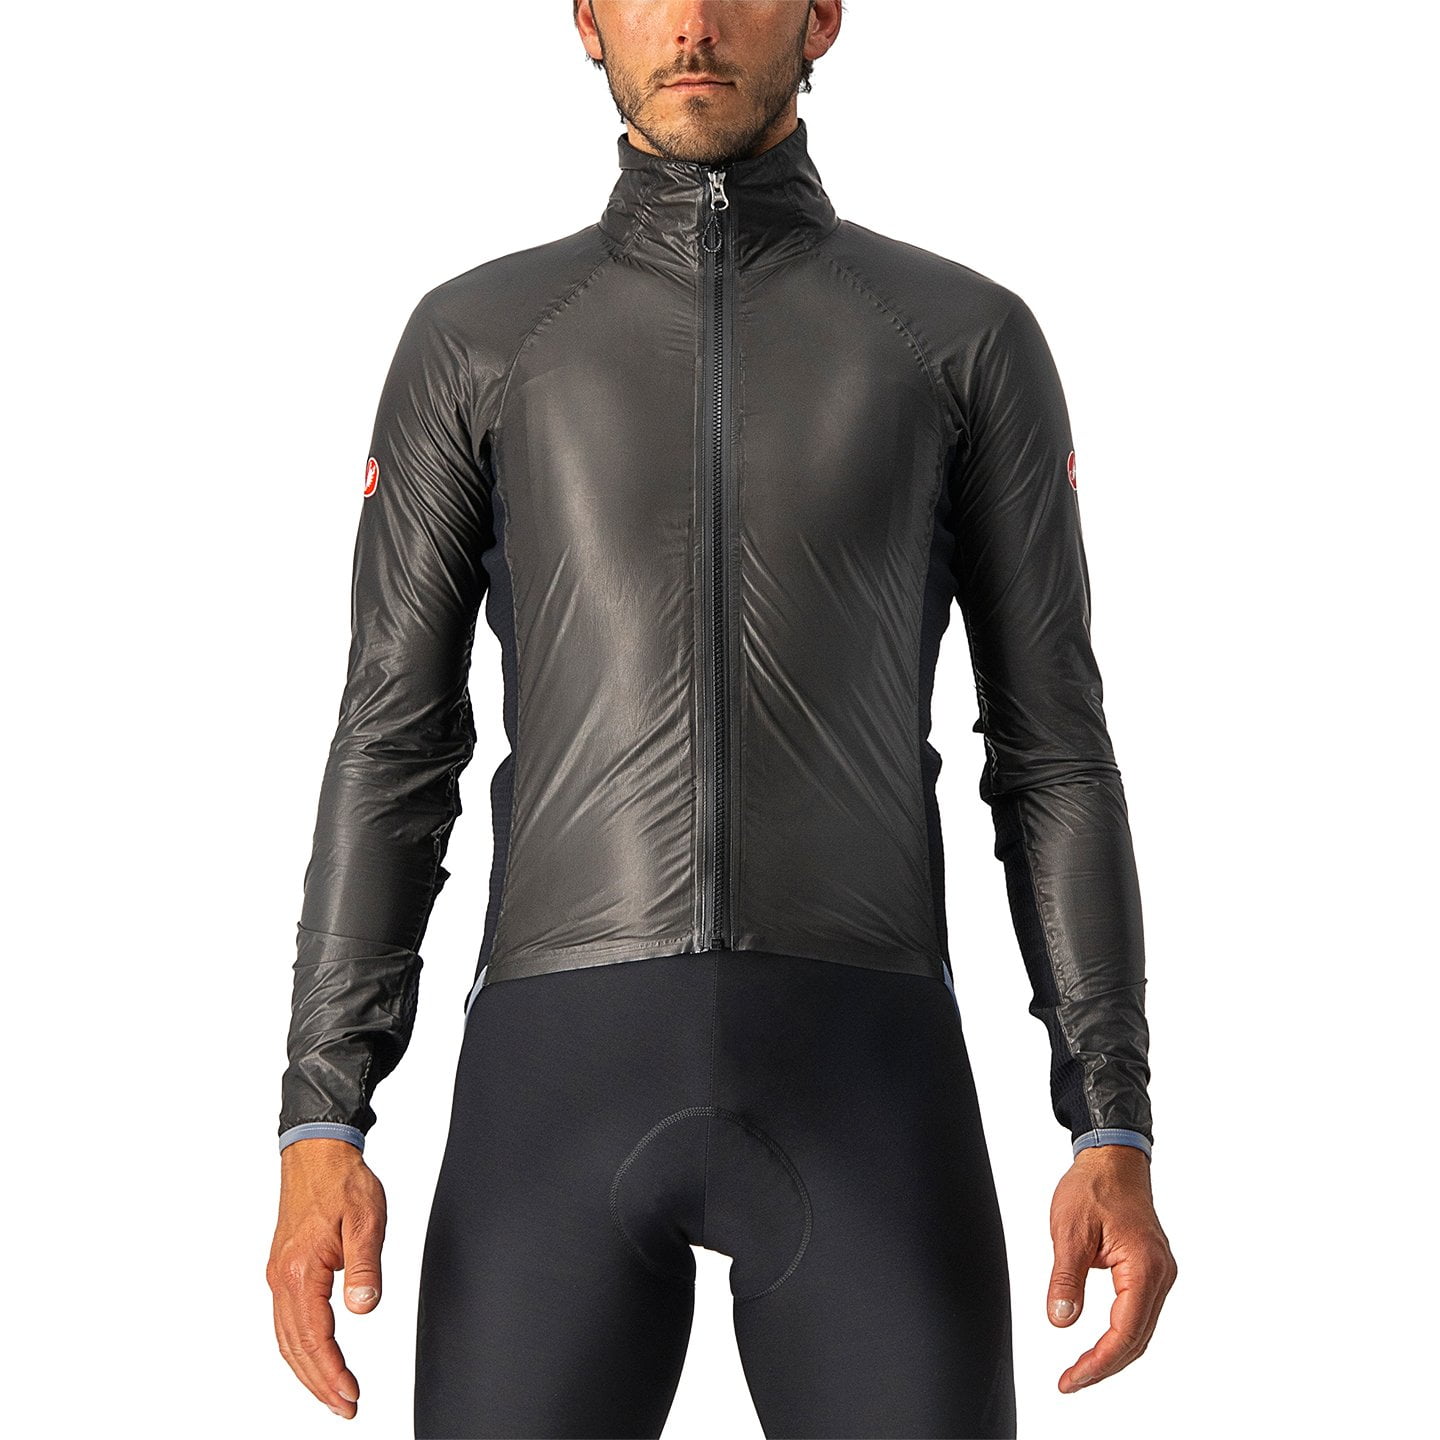 CASTELLI Slicker Pro rain jacket Waterproof Jacket, for men, size S, Cycle jacket, Rainwear